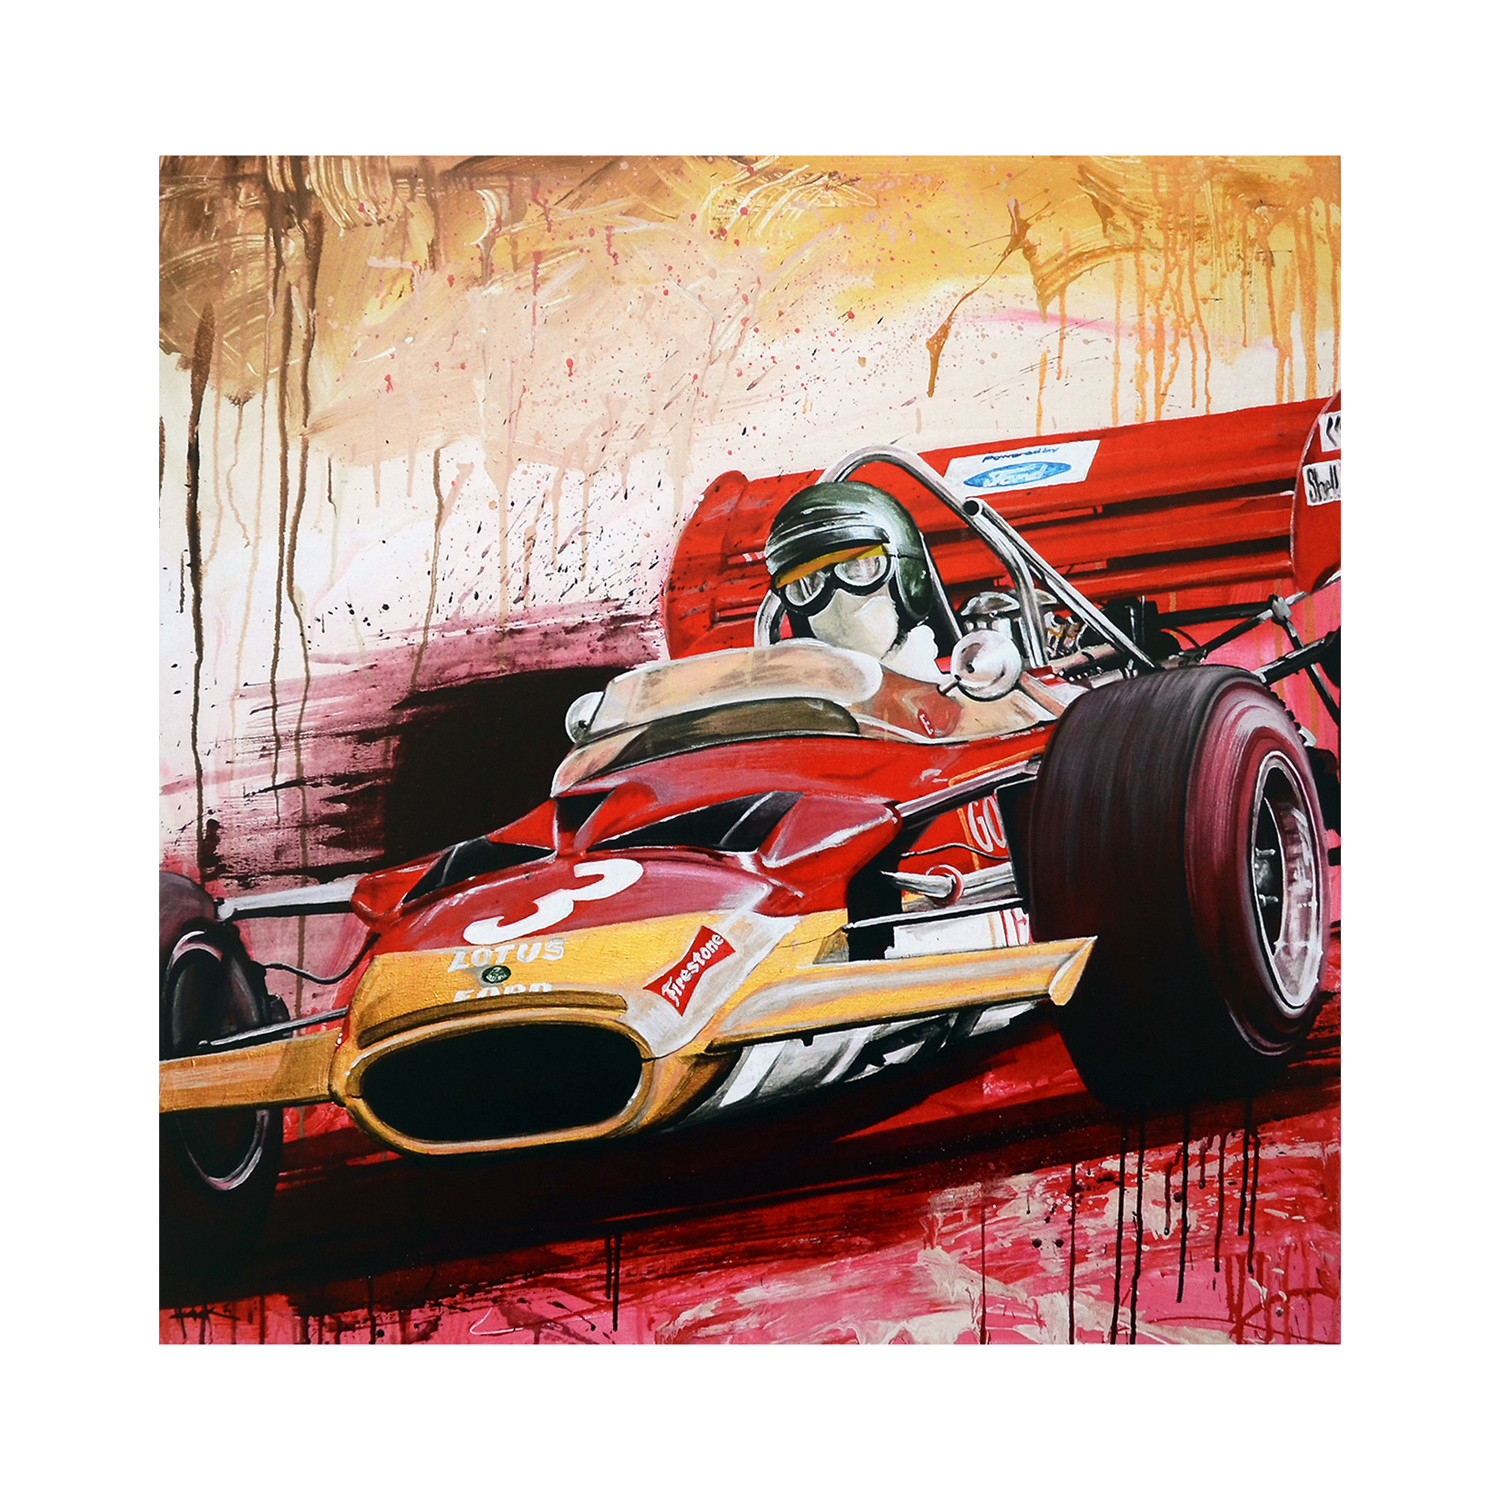 Jochen Rindt Monaco 1970 - Tom Havlasek - Touch of Modern